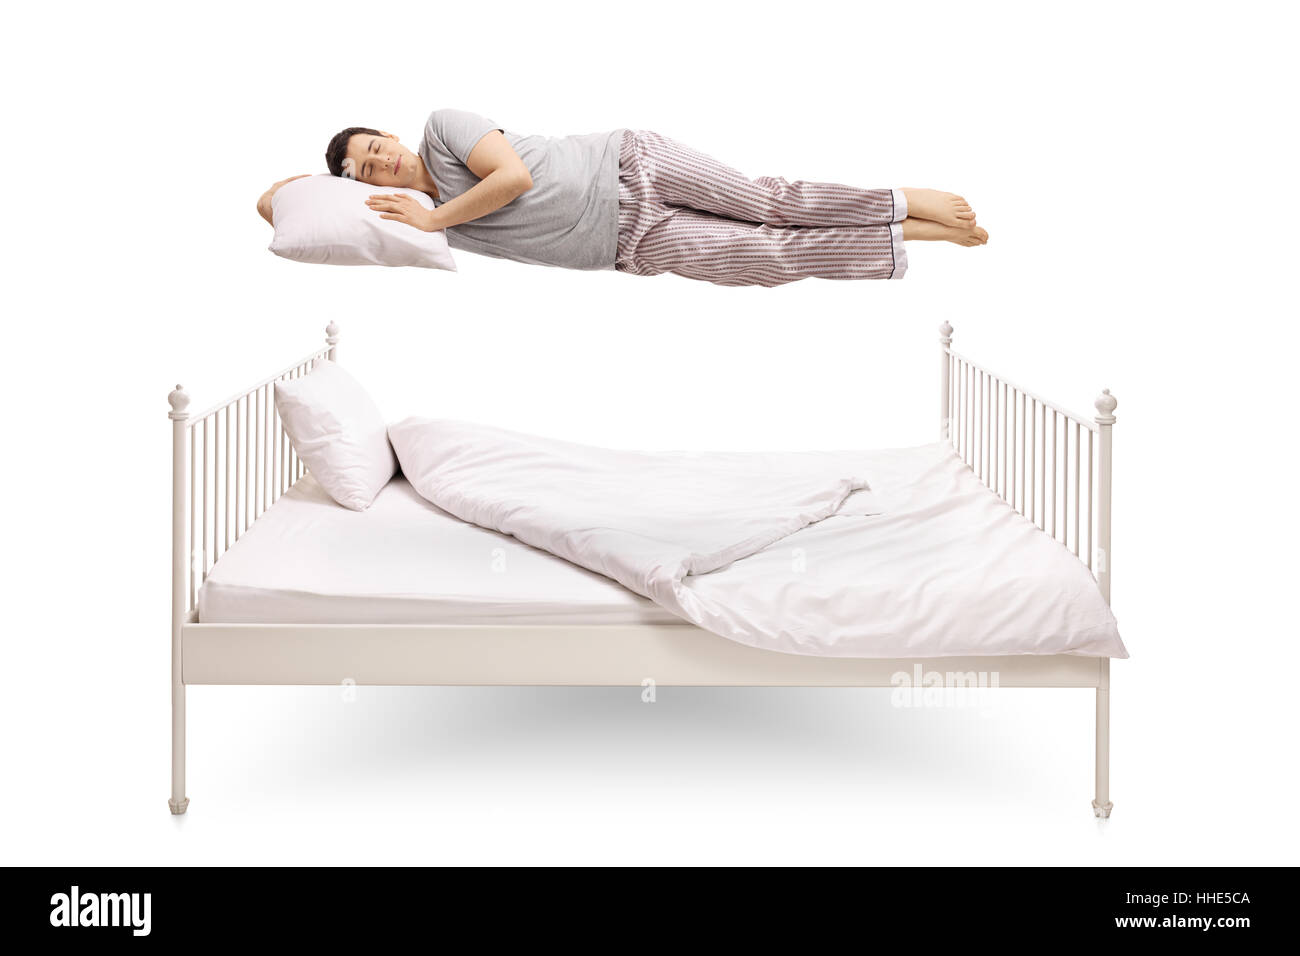 Giovane uomo dorme e galleggiante sopra un letto isolato su sfondo bianco Foto Stock